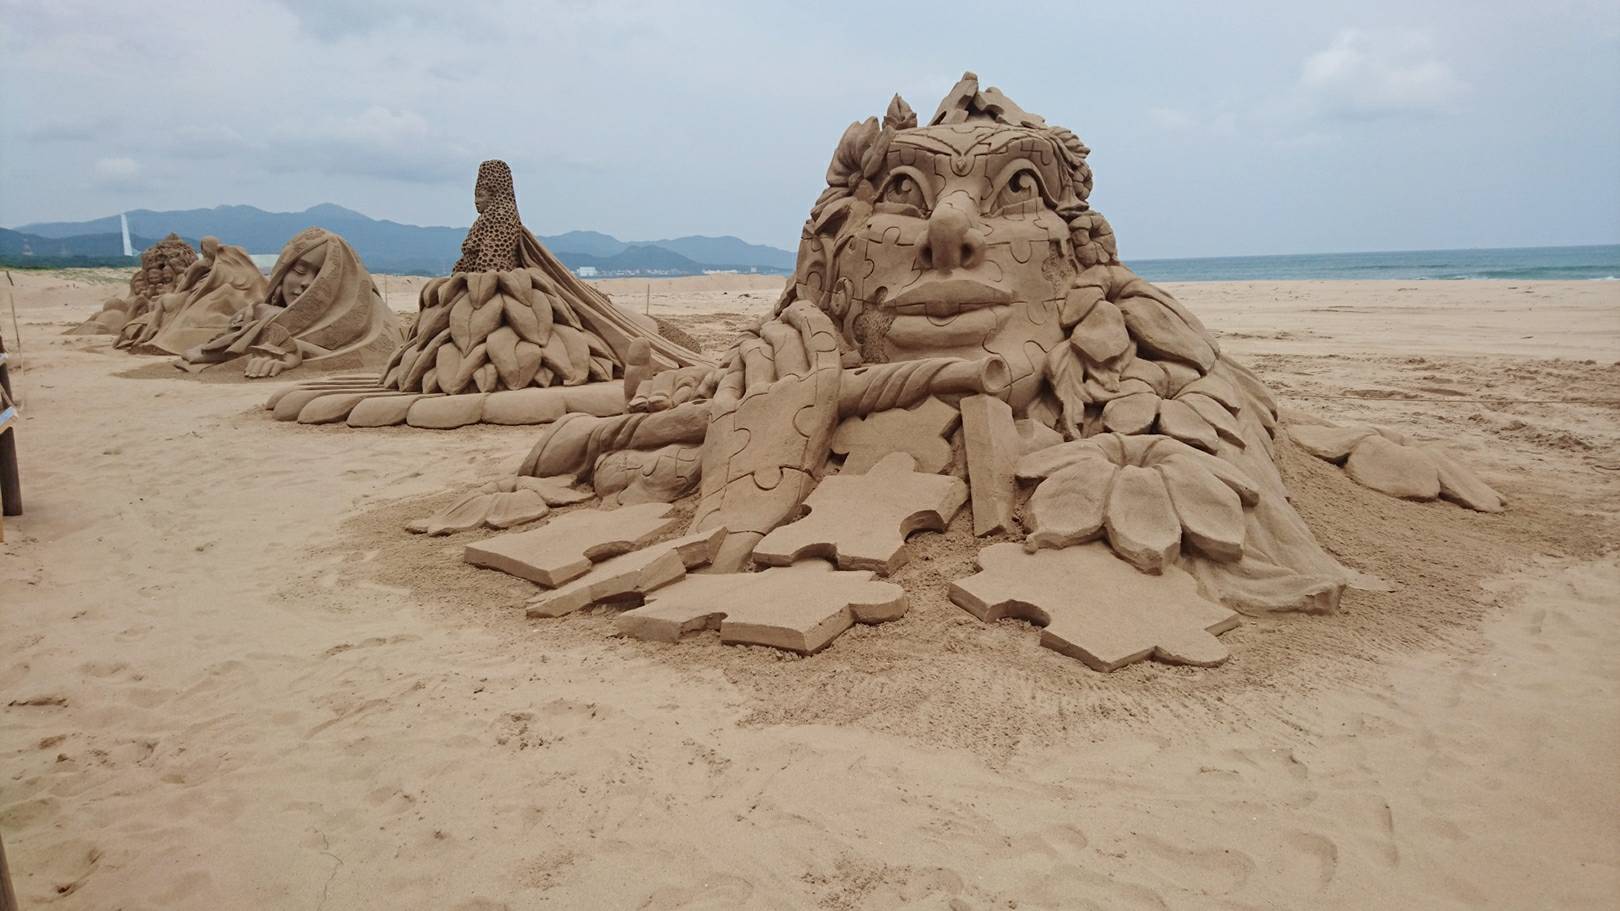 First work - "Inspiration" by Belgian sand sculpturer Irina Sokolova